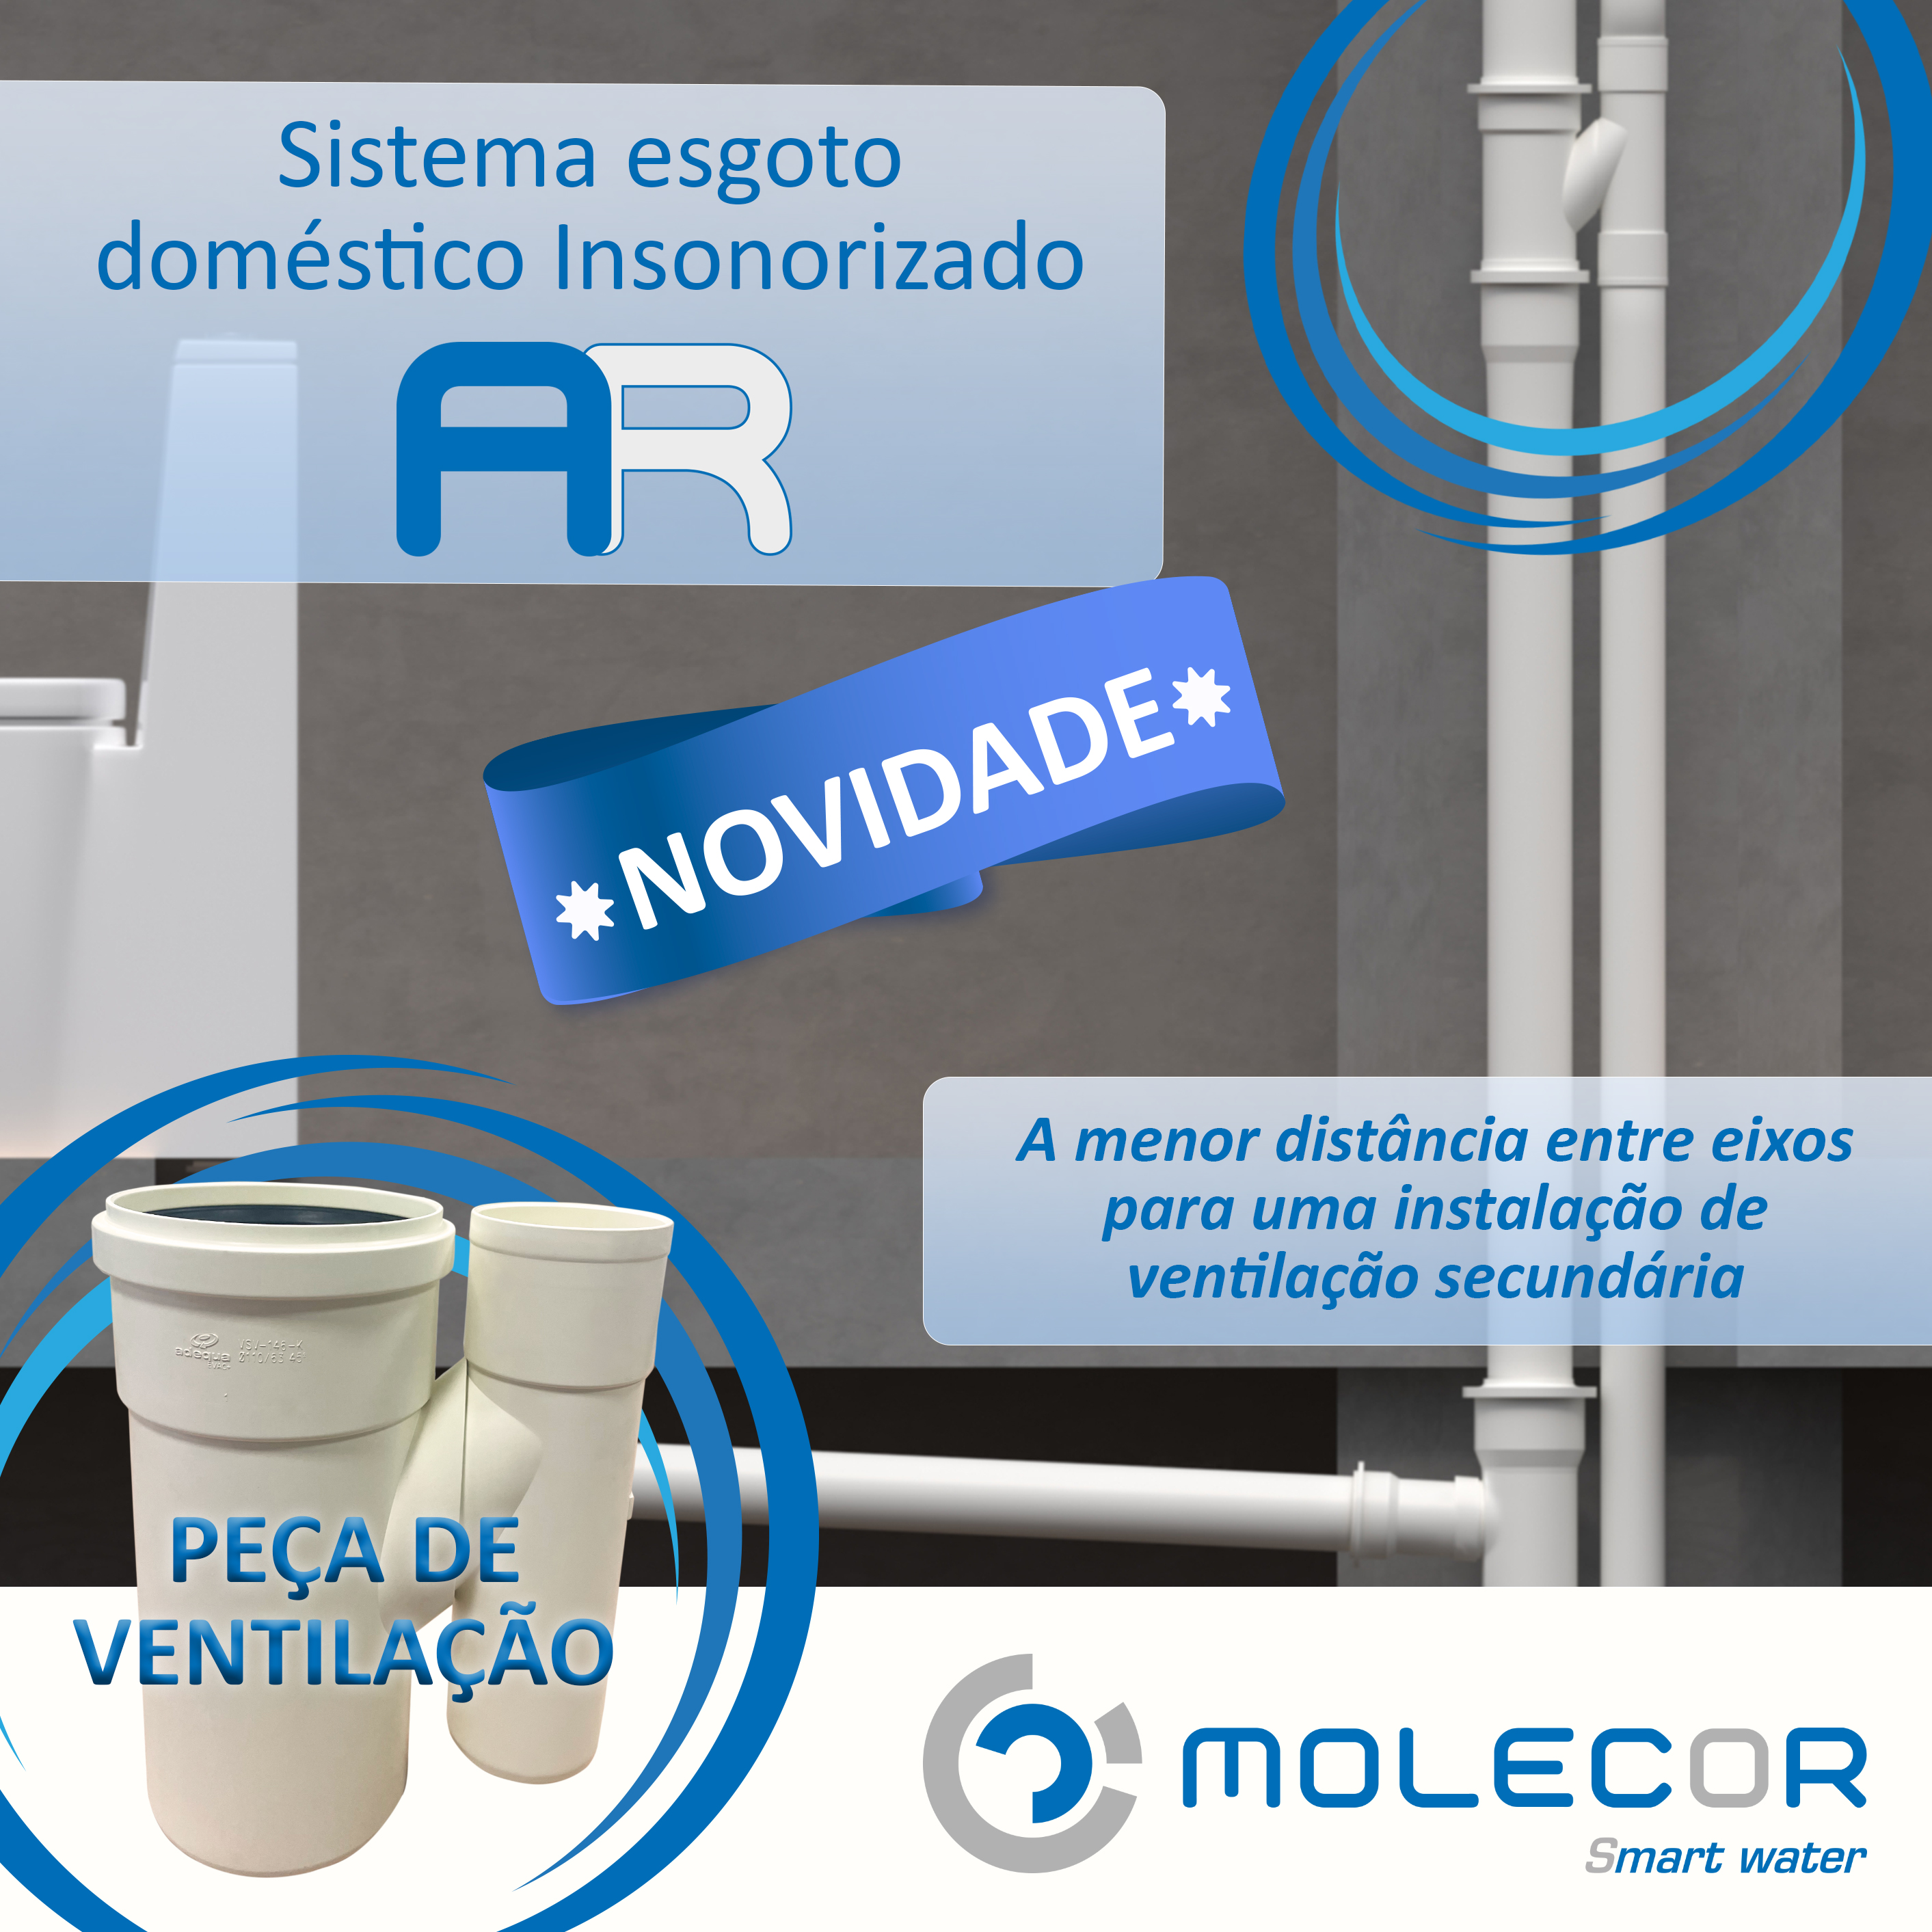 Molecor lança no mercado a sua nova peça de ventilação do Sistema esgoto doméstico Insonorizado AR®